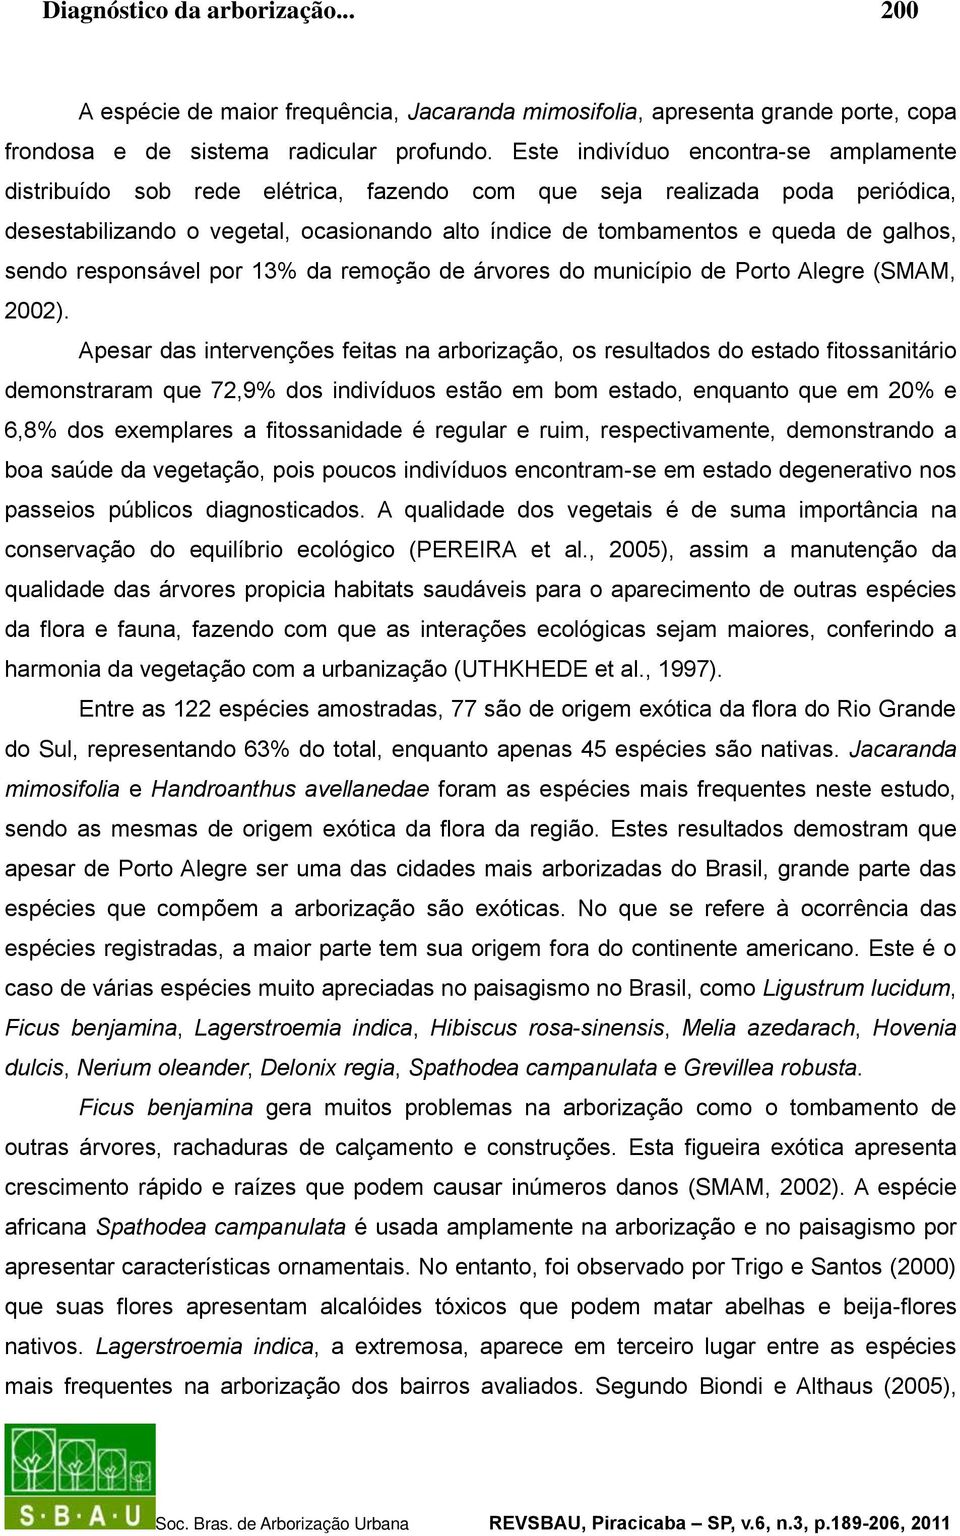 galhos, sendo responsável por 13% da remoção de árvores do município de Porto Alegre (SMAM, 2002).